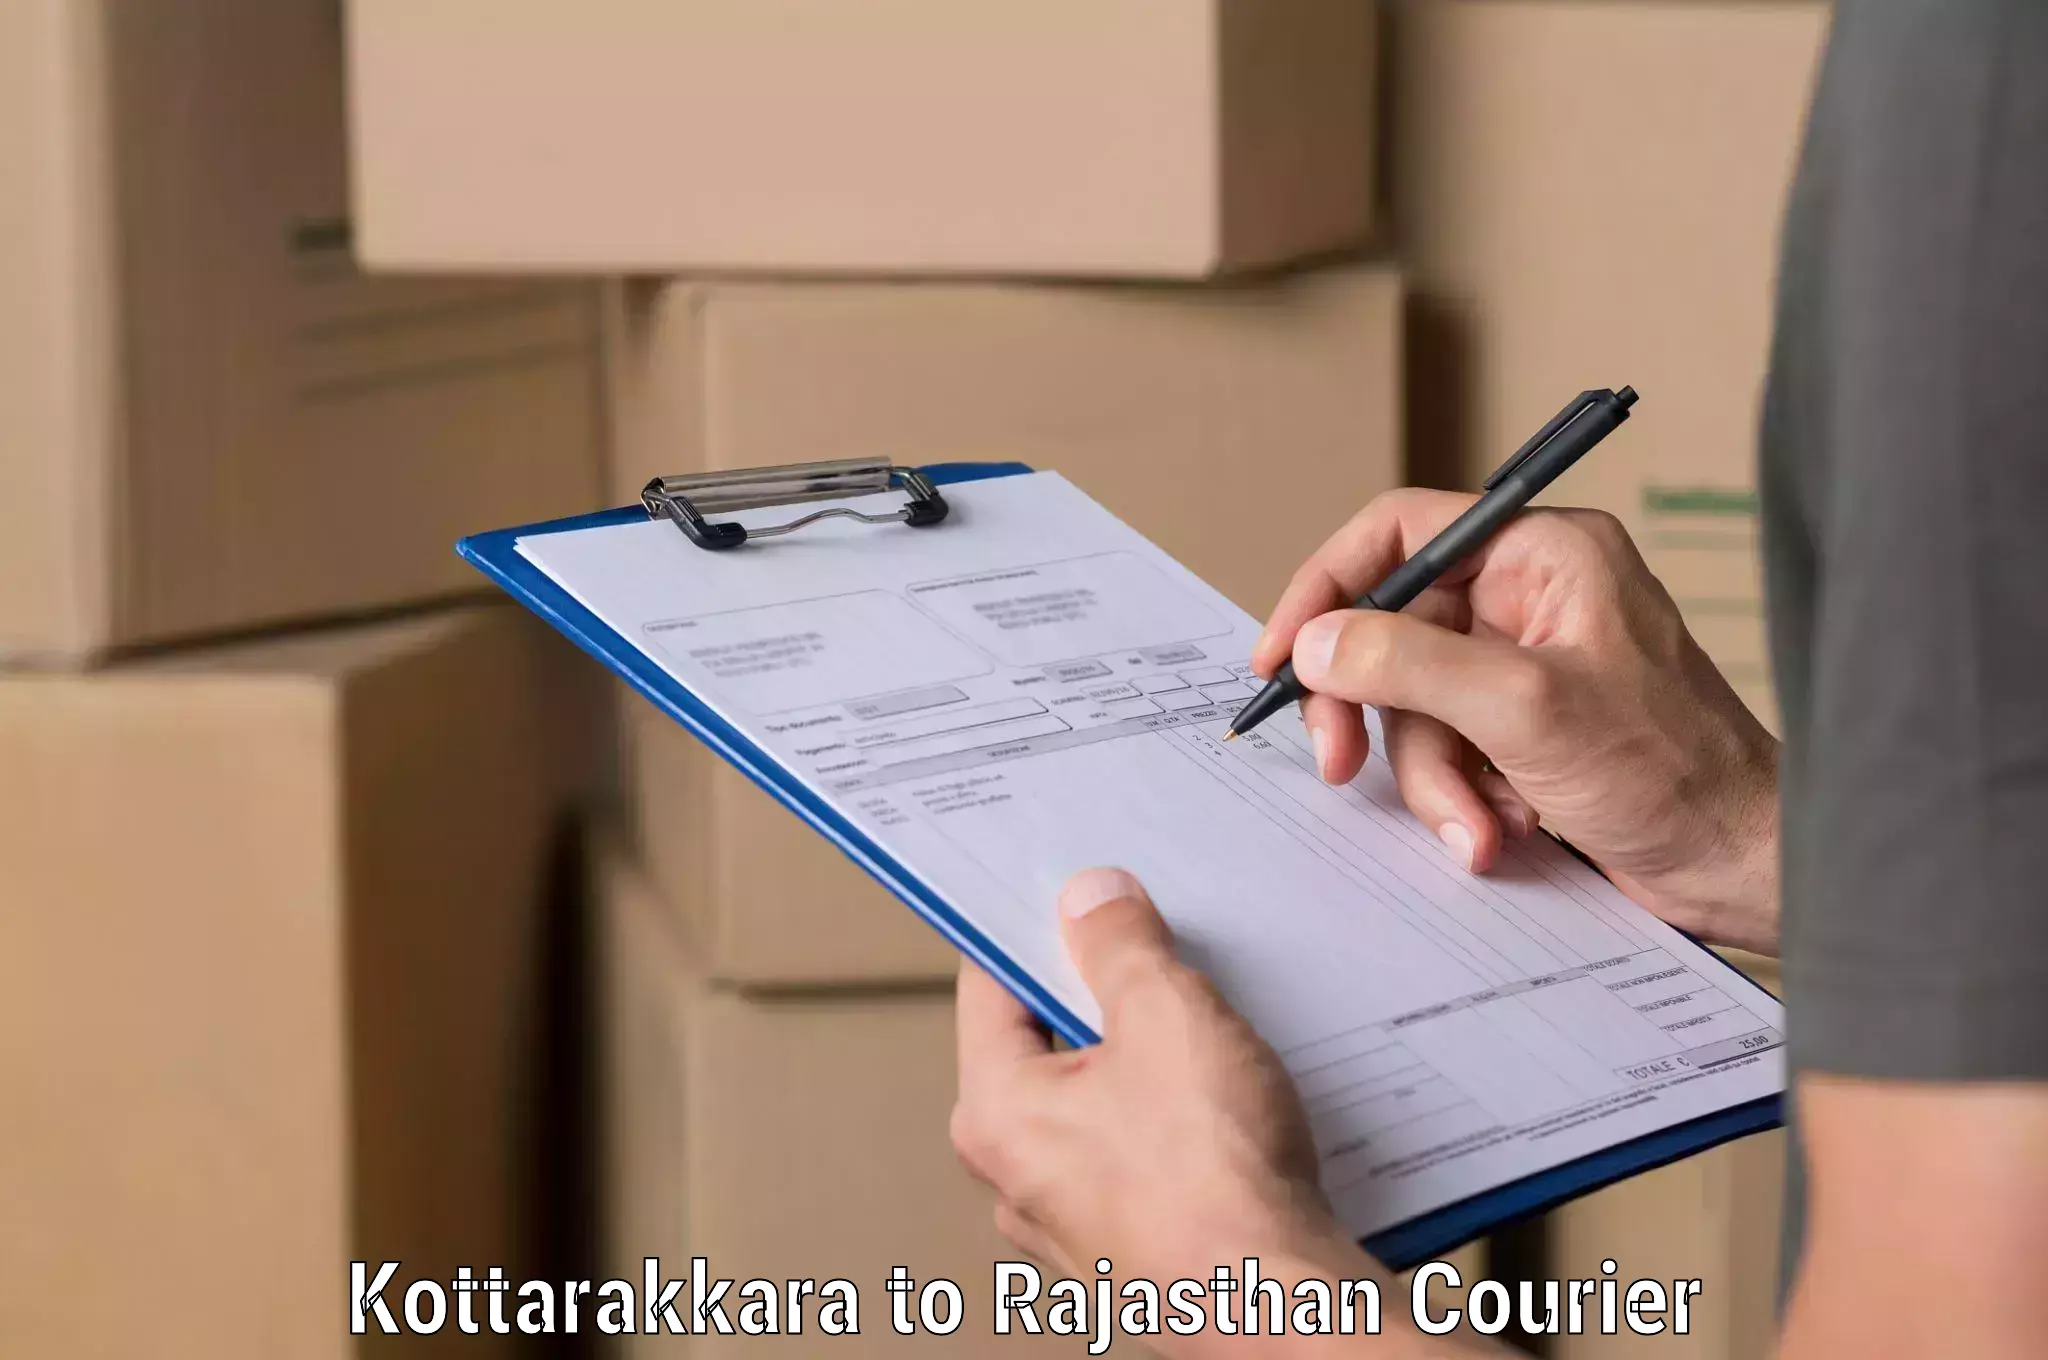 Optimized delivery routes Kottarakkara to Malpura